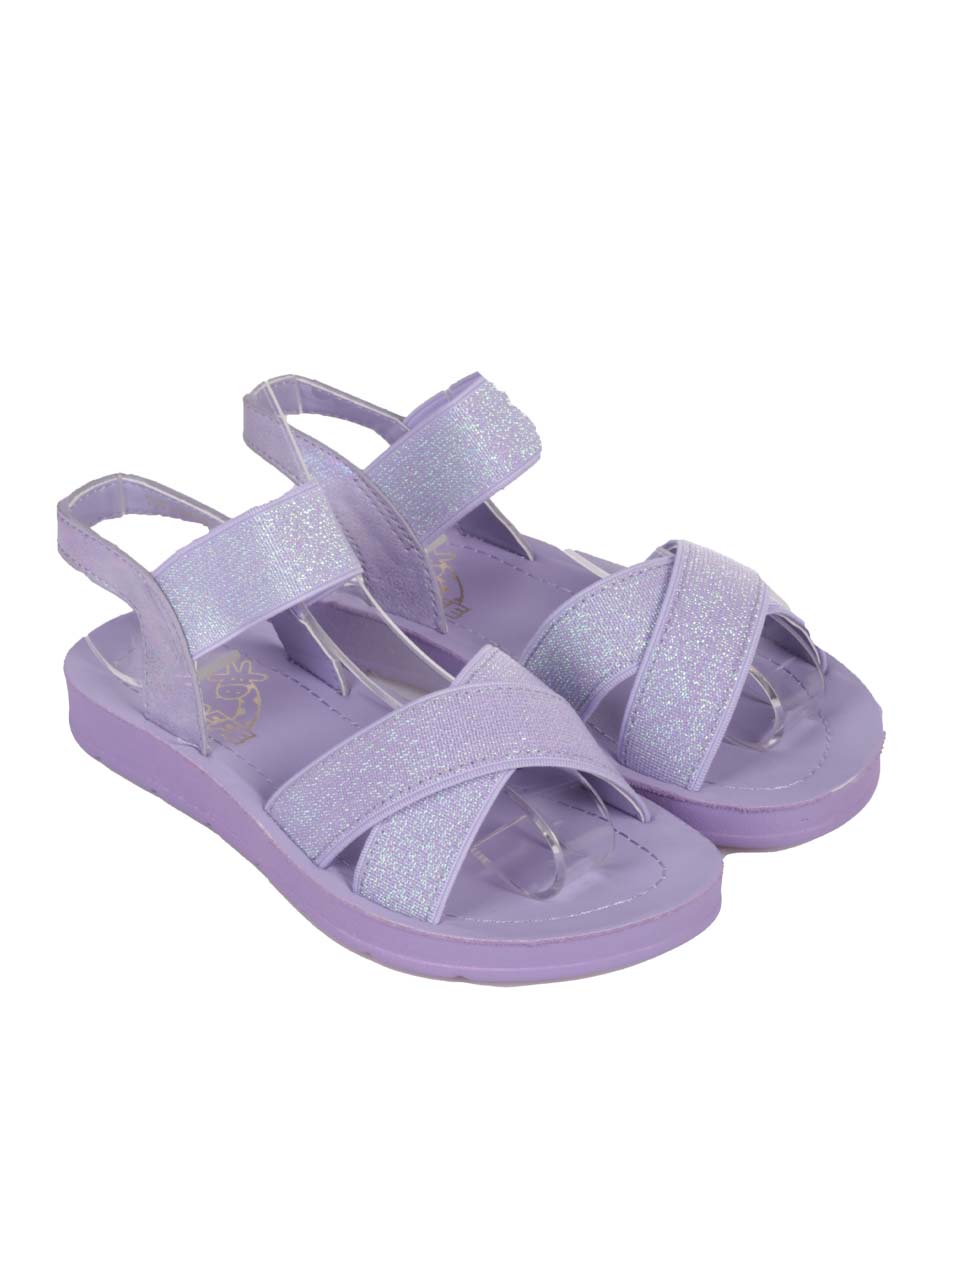 Ежедневни детски сандали в лилаво 17F-24221 purple 